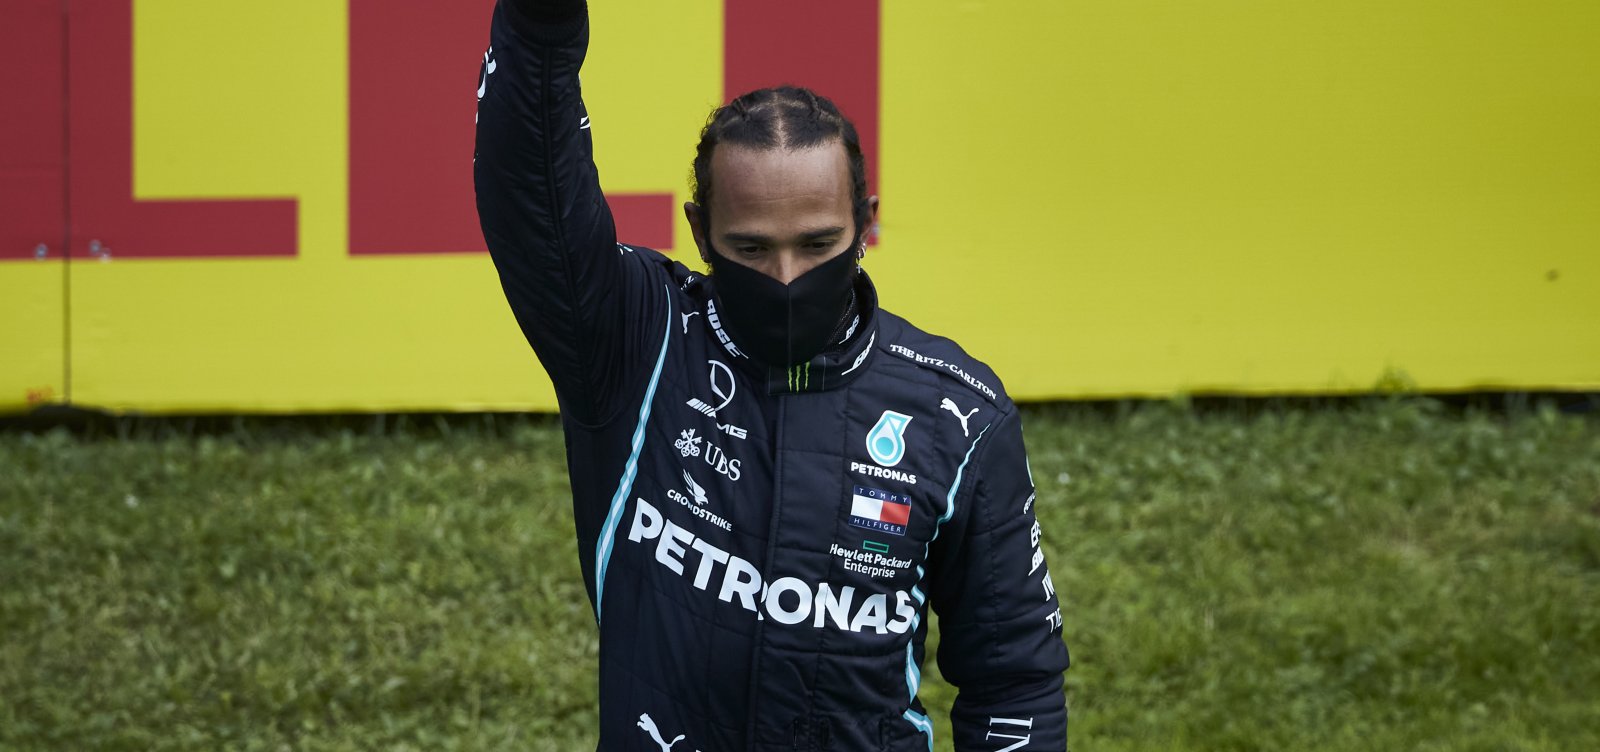 Fórmula 1: protesto contra racismo marca GP da Estíria; Lewis Hamilton vence competição